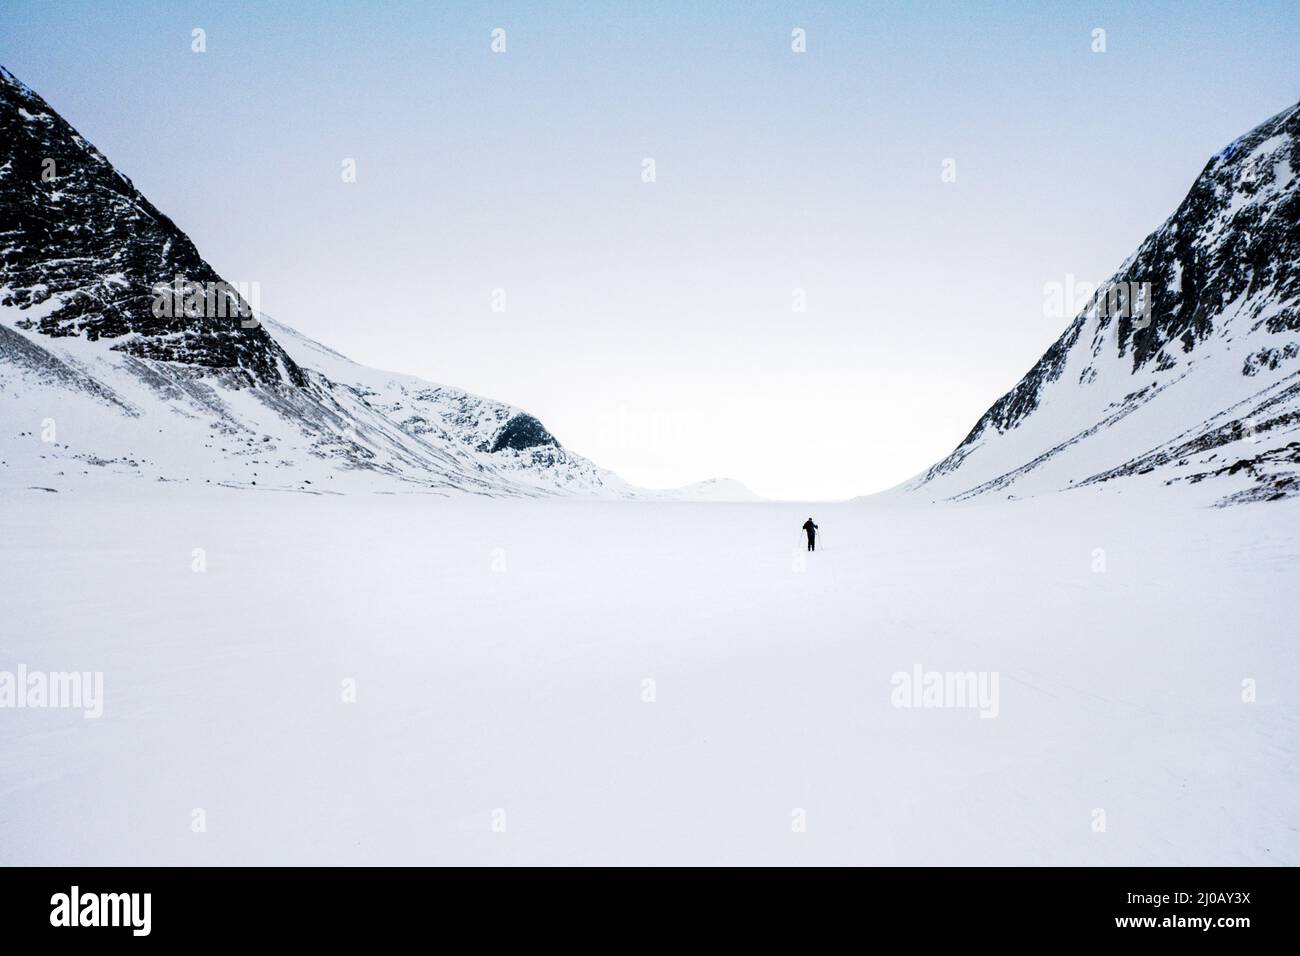 Ein einzelliger Skilanglauf-Tourer in der Region Dovre/Dovrefjell in Norwegen Stockfoto